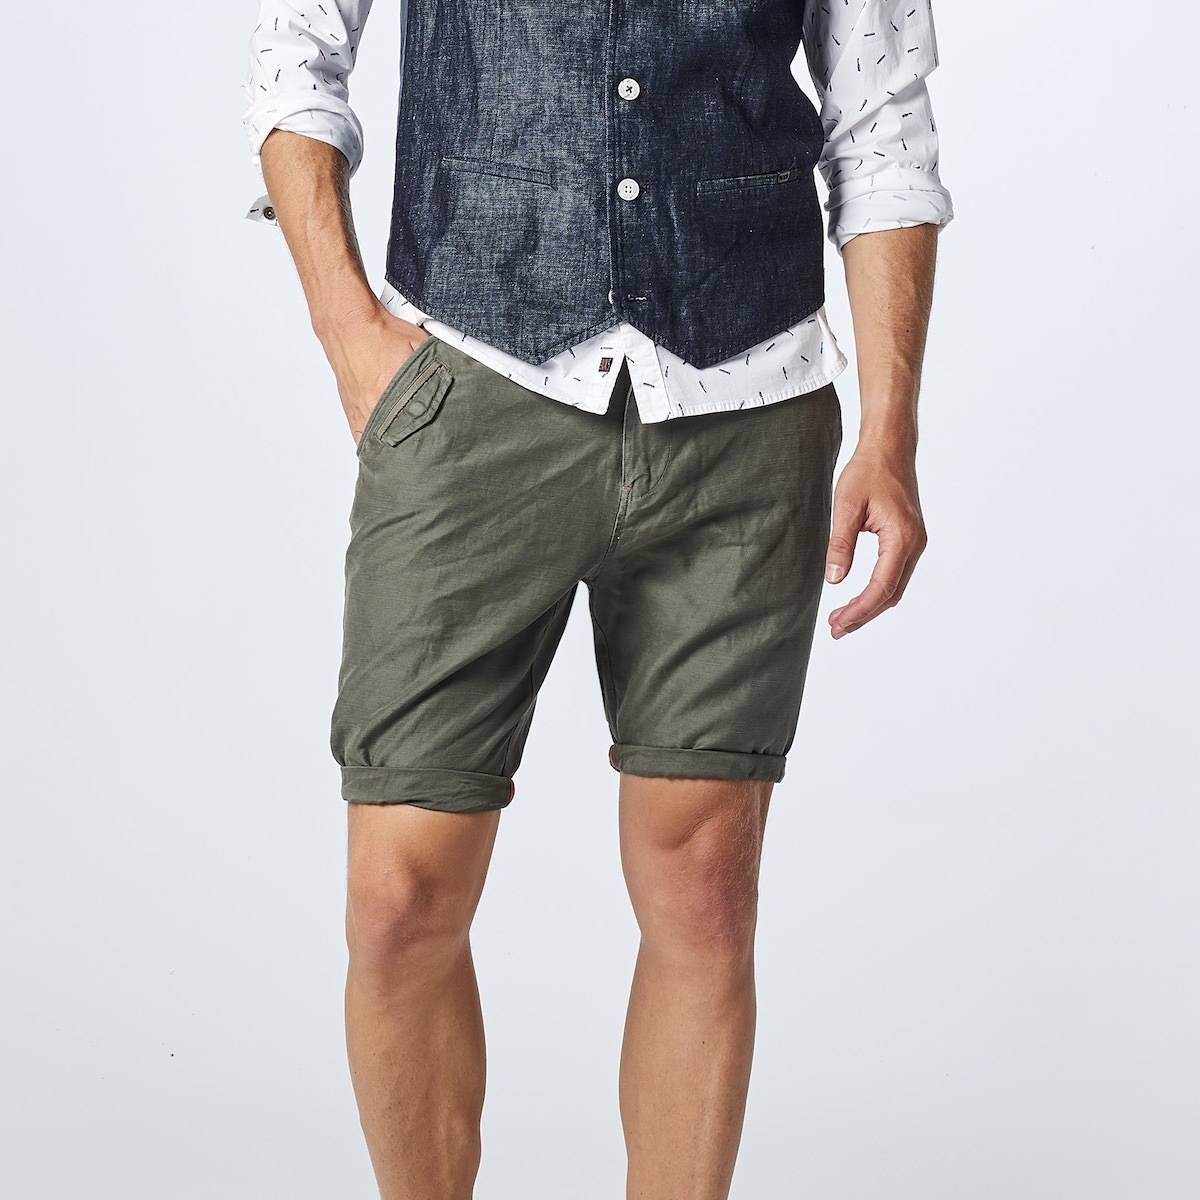 Летние мужские шорты: какие в моде и с чем носить?